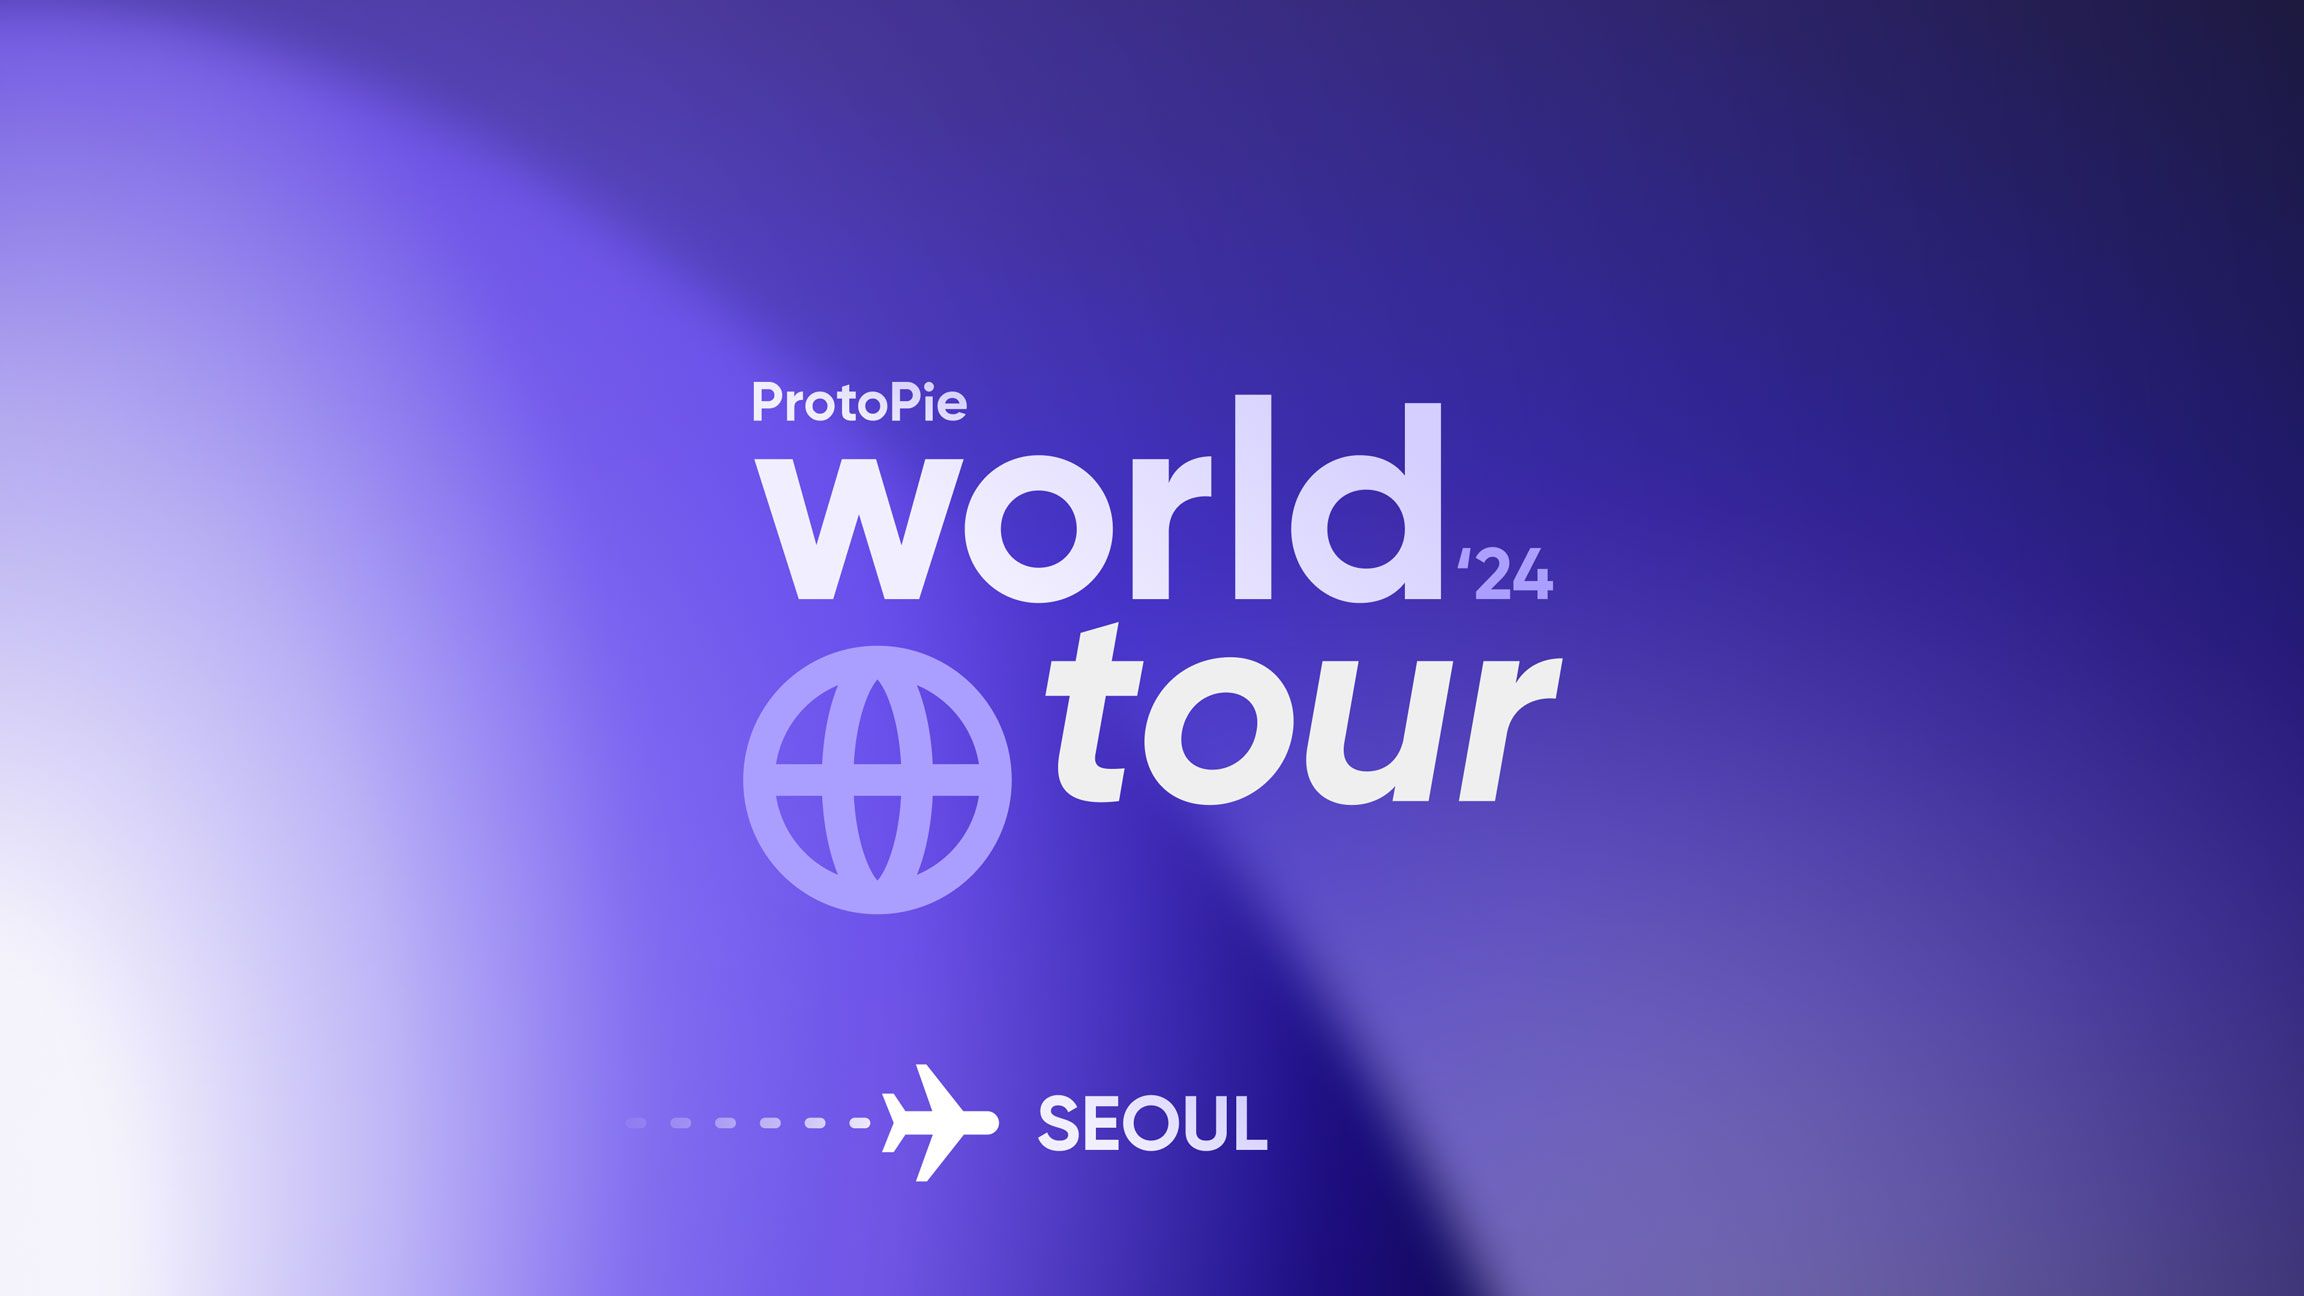 protopie world tour in seoul